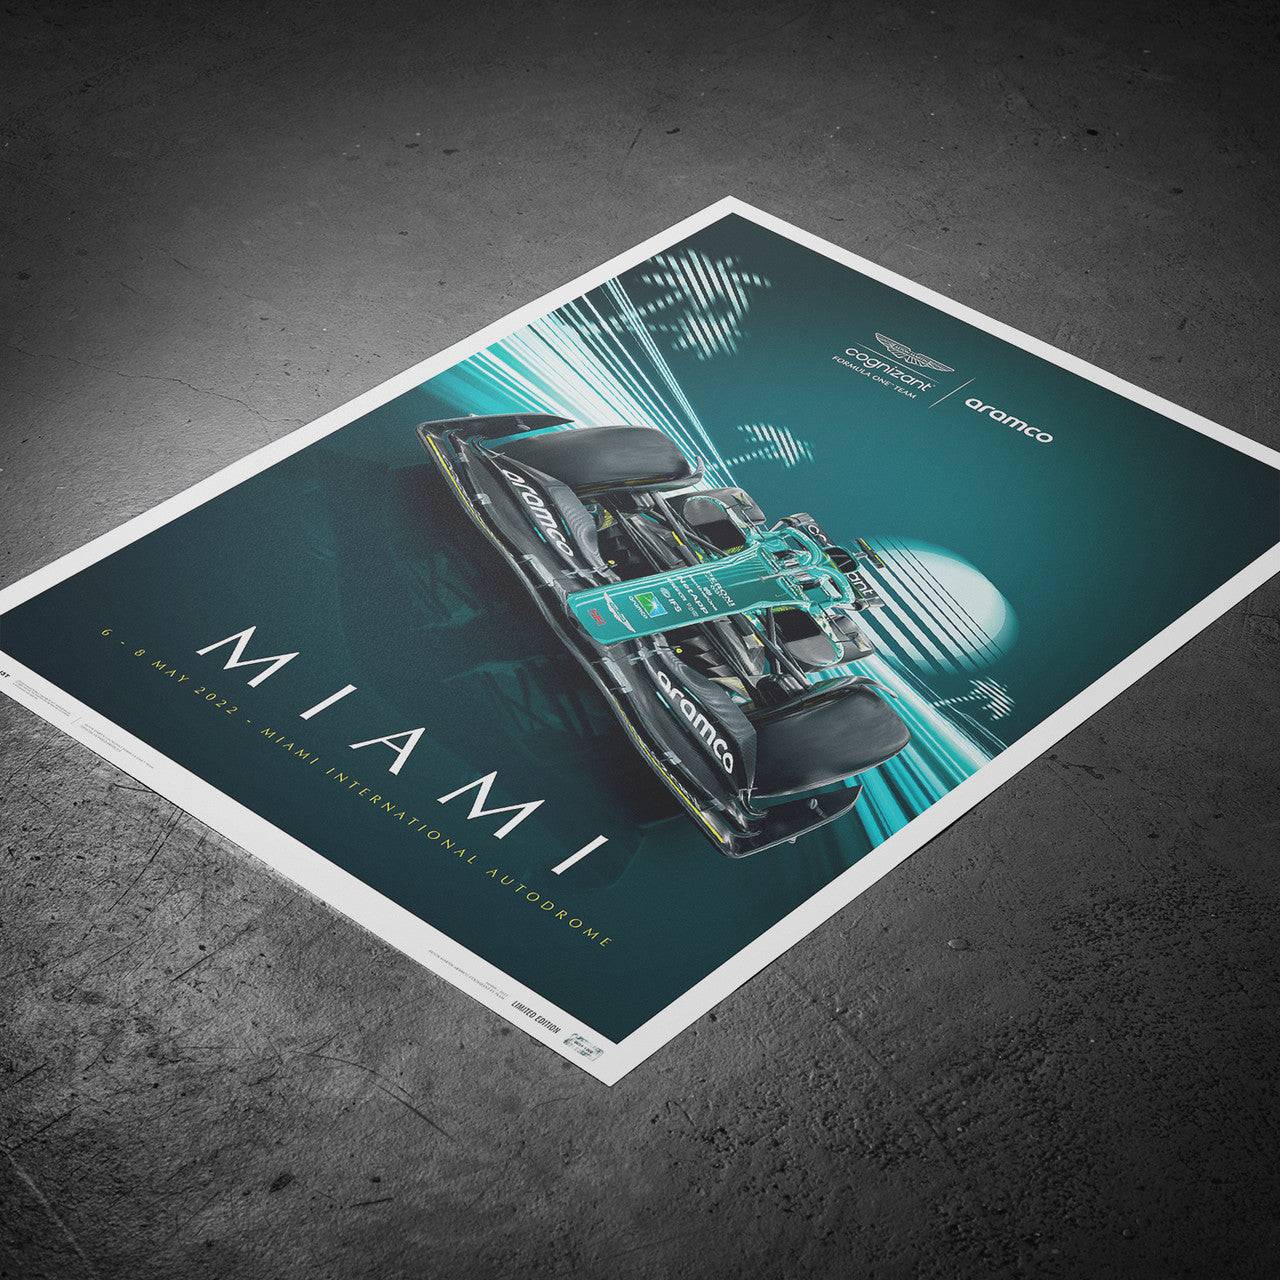 Aston Martin Aramco Cognizant Formula 1 Team - Miami 2022 | Limited Edition